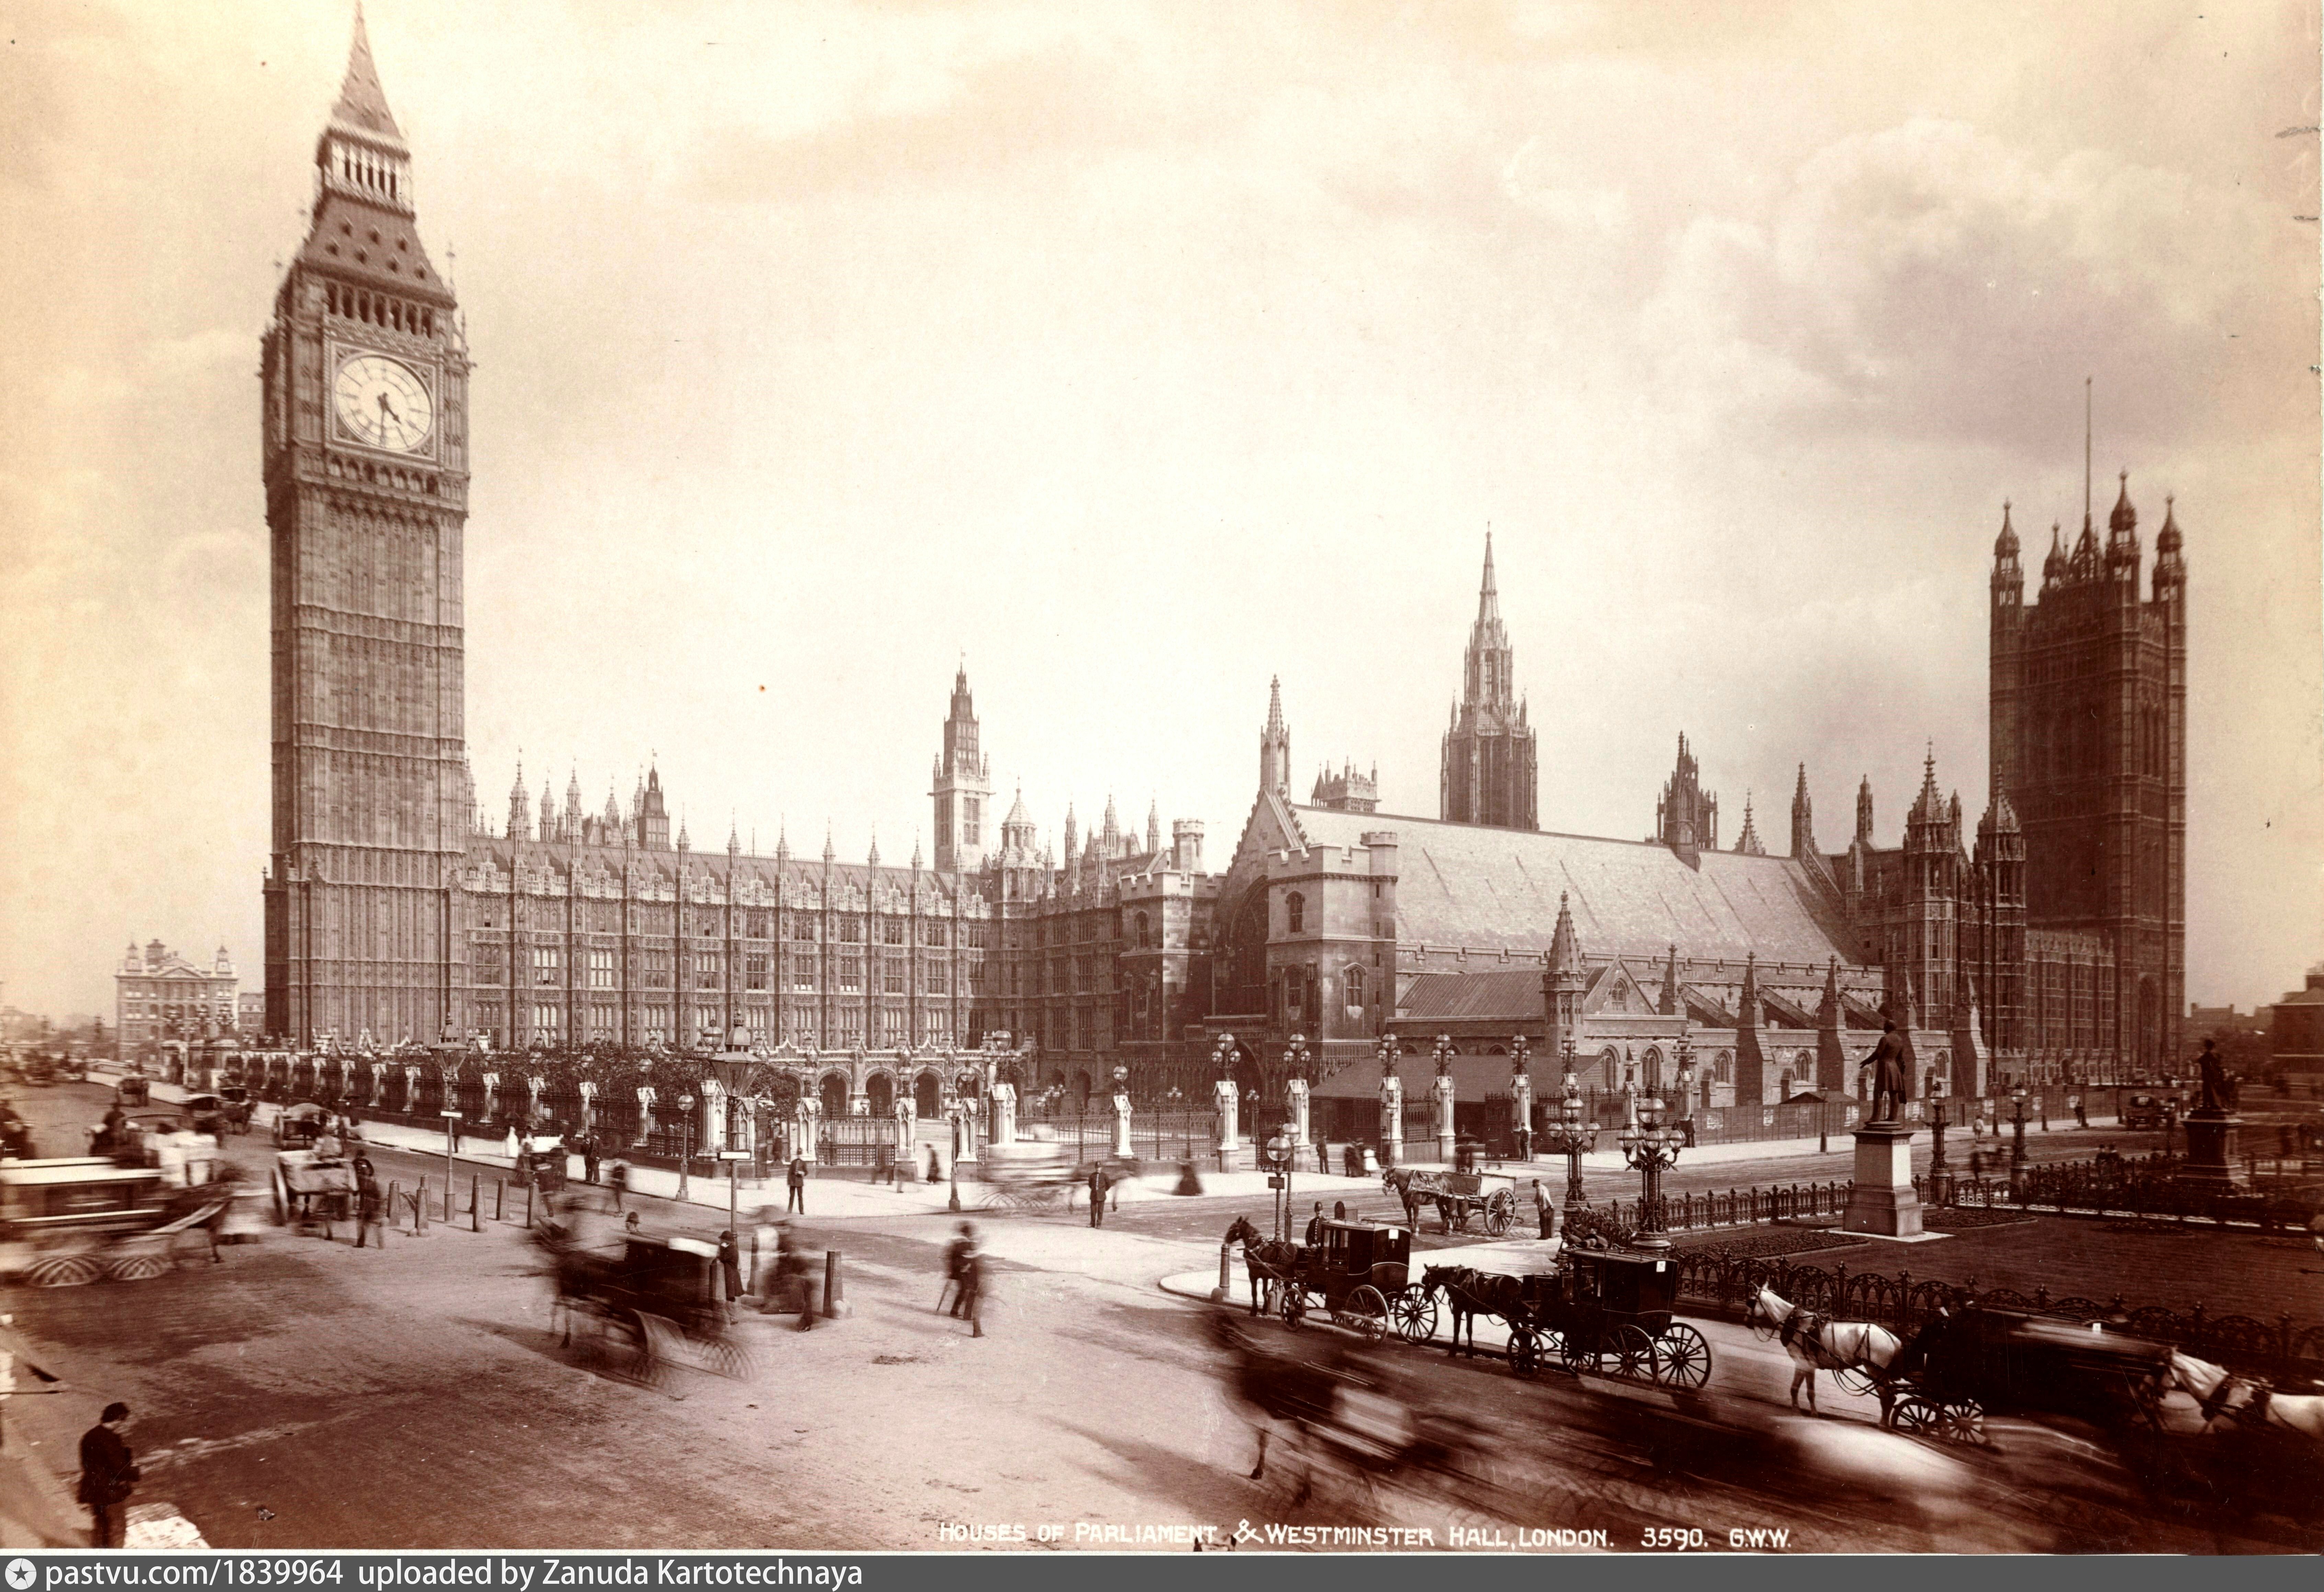 Основан лондон году. Лондон 19 век. Вестминстерский дворец Лондон Викторианская эпоха. Лондон 19 век Биг Бен. Лондон Вестминстер 19 века.